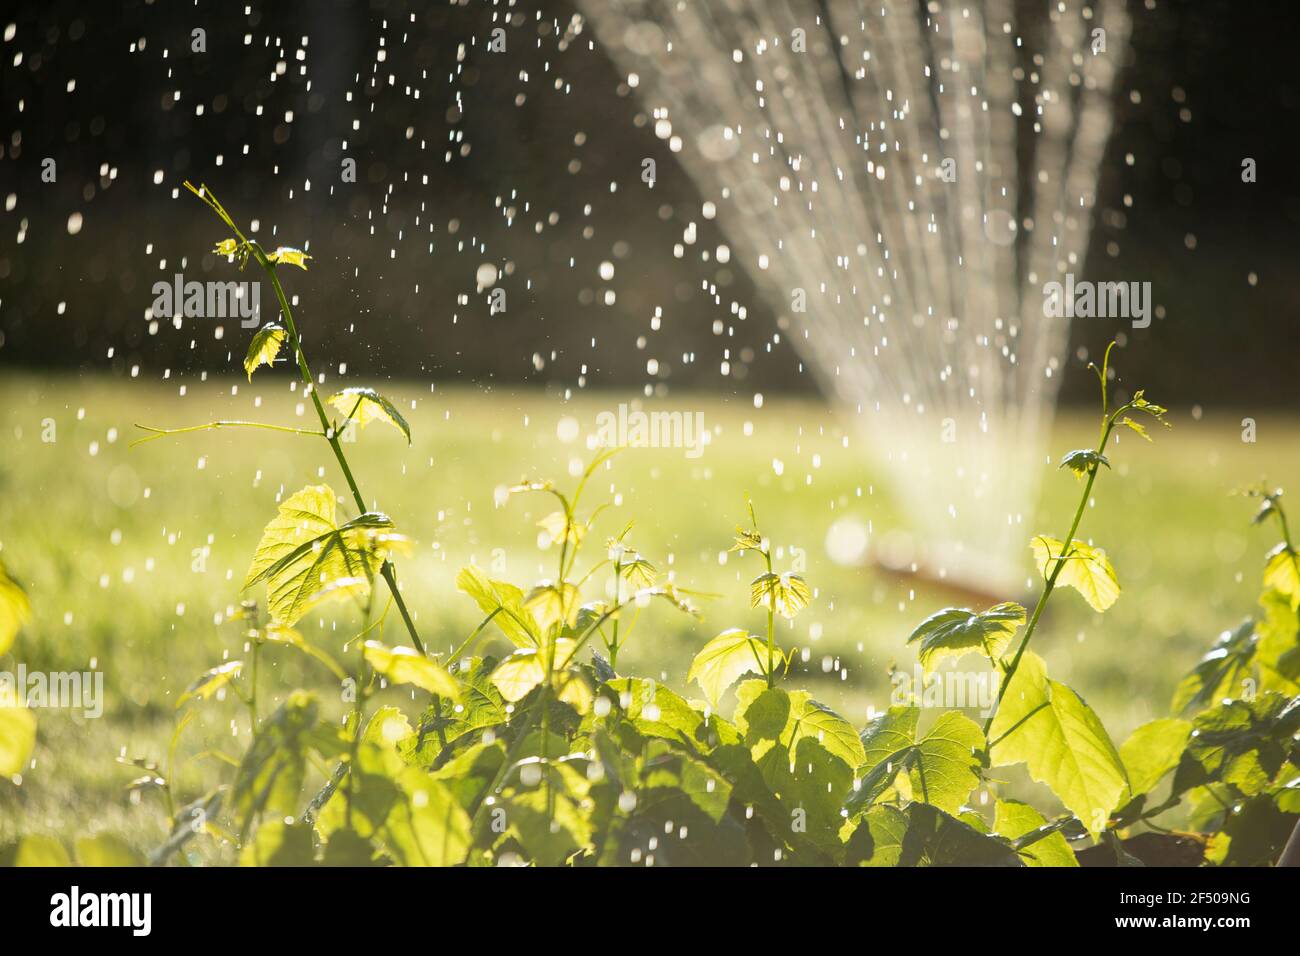 Sprinkler Bewässerung üppig grünen Pflanzen in sonnigen Sommergarten Stockfoto